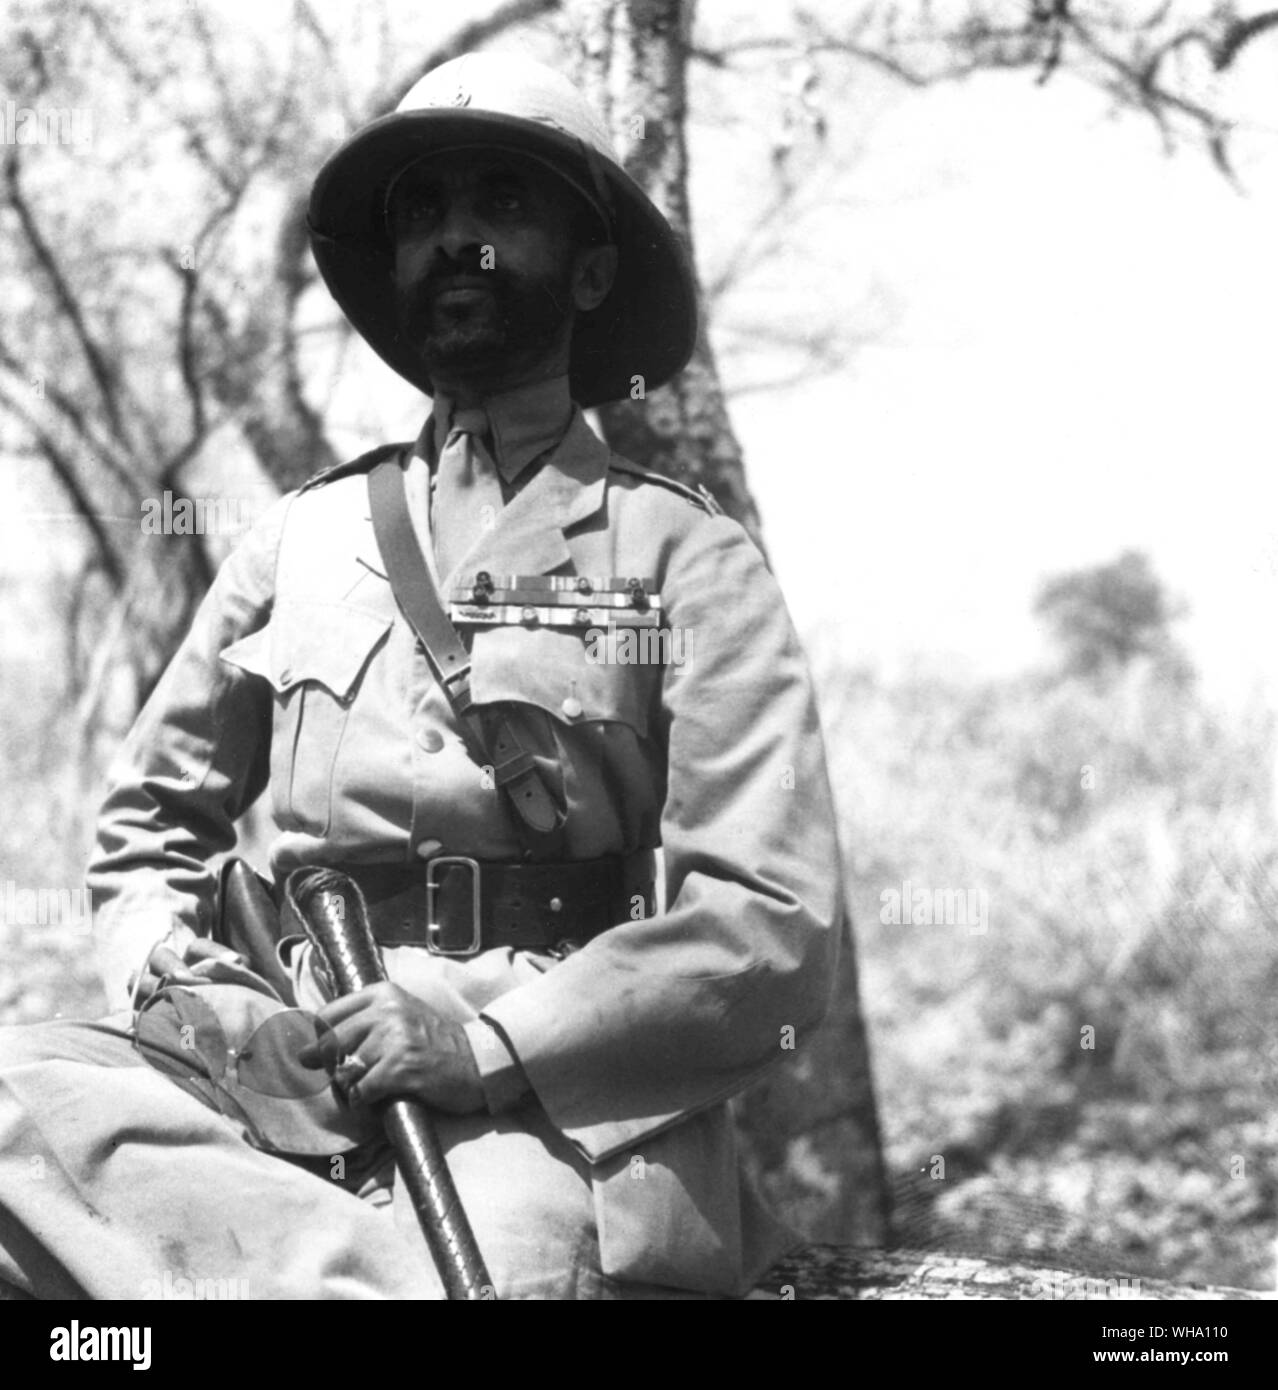 WW2: Abisinia. El emperador montado en un caballo regresan al campamento después de hacer una gira de inspección del país circundante. El 22 de febrero de1941. Haile Selassie Foto de stock